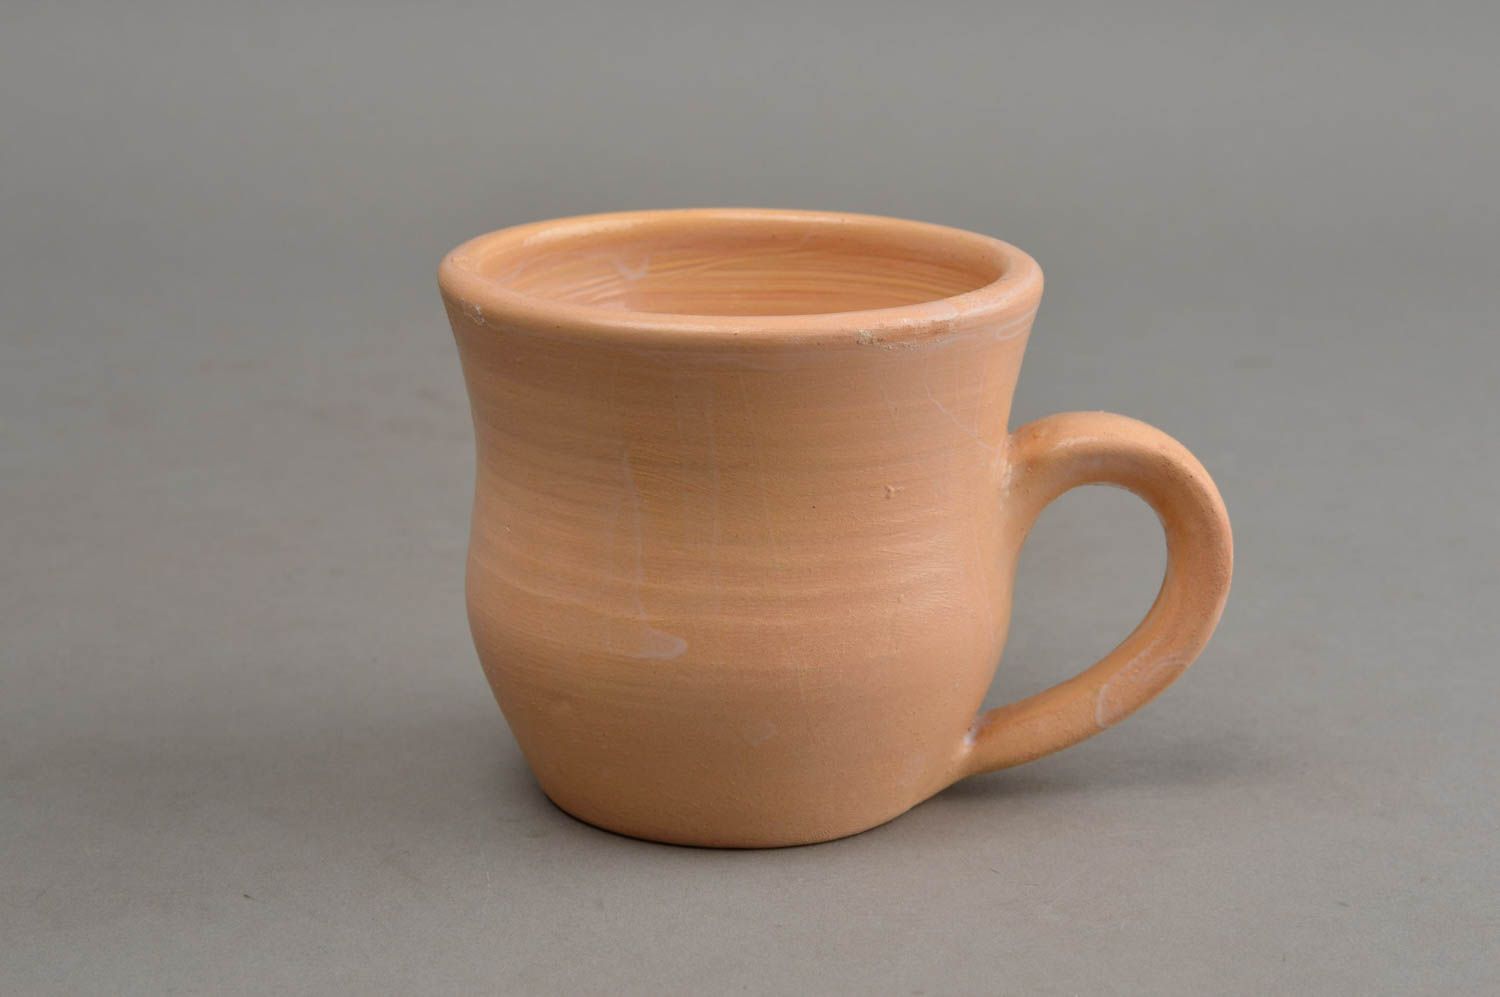 Глиняная чашка небольшая бежевая глазурованная 200 мл оригинальная ручной работы фото 2